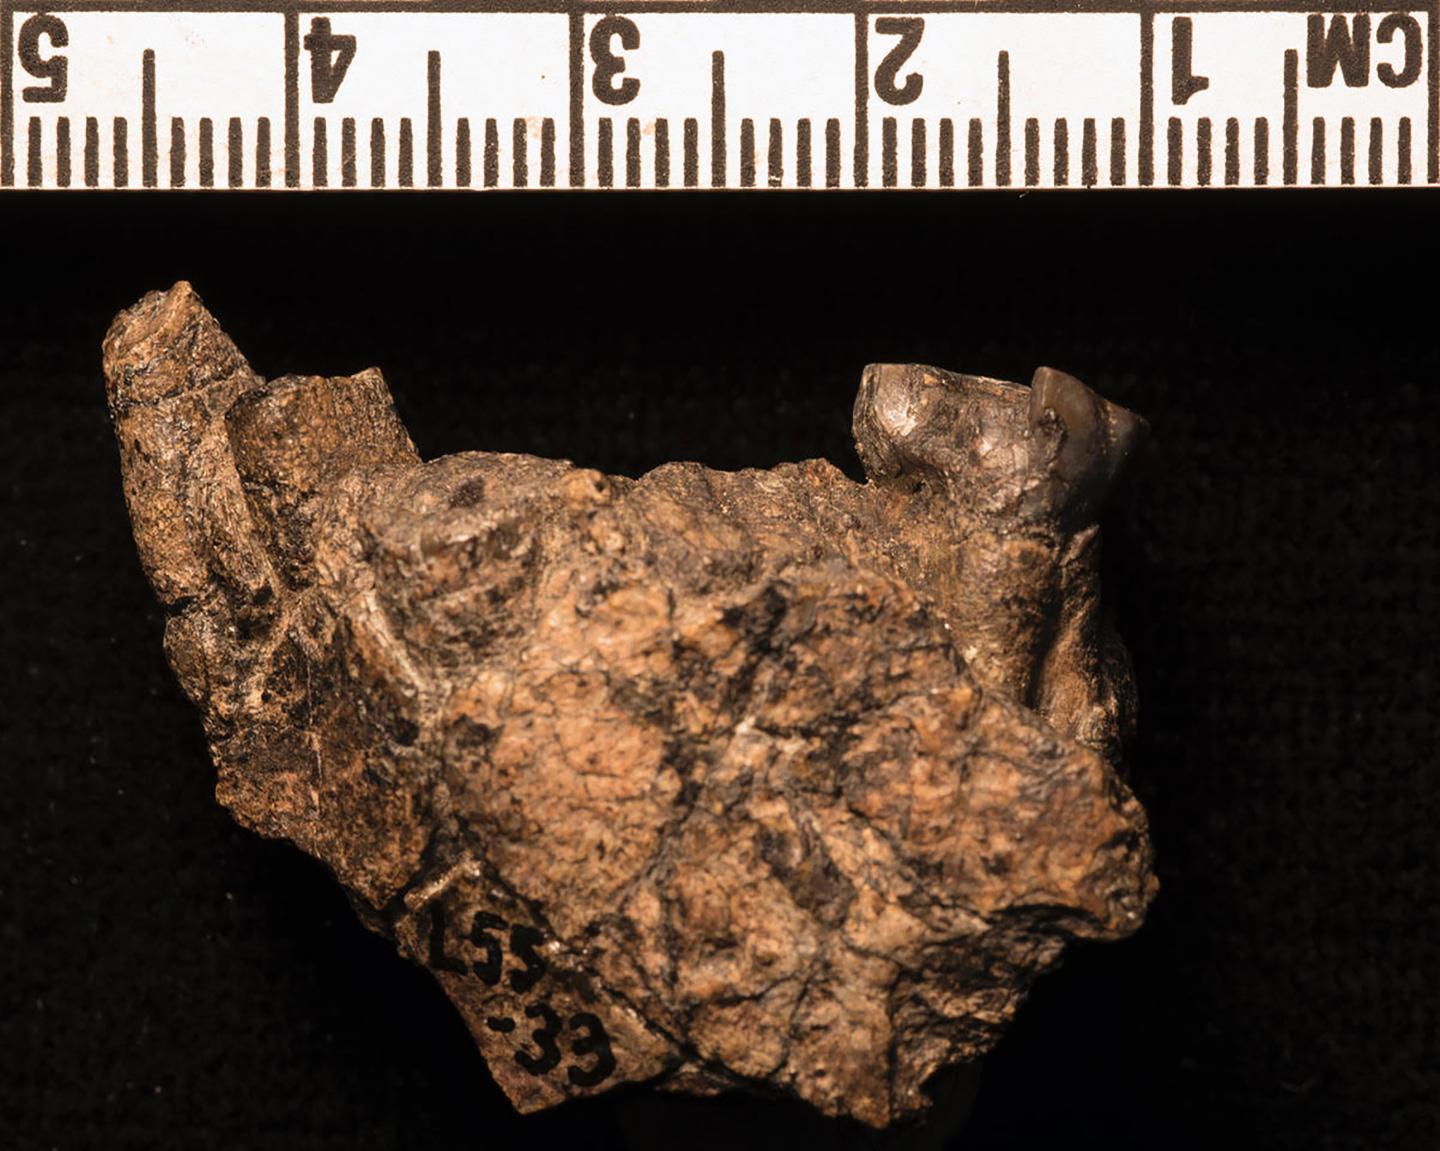 Paranthropus aethiopicus mandible